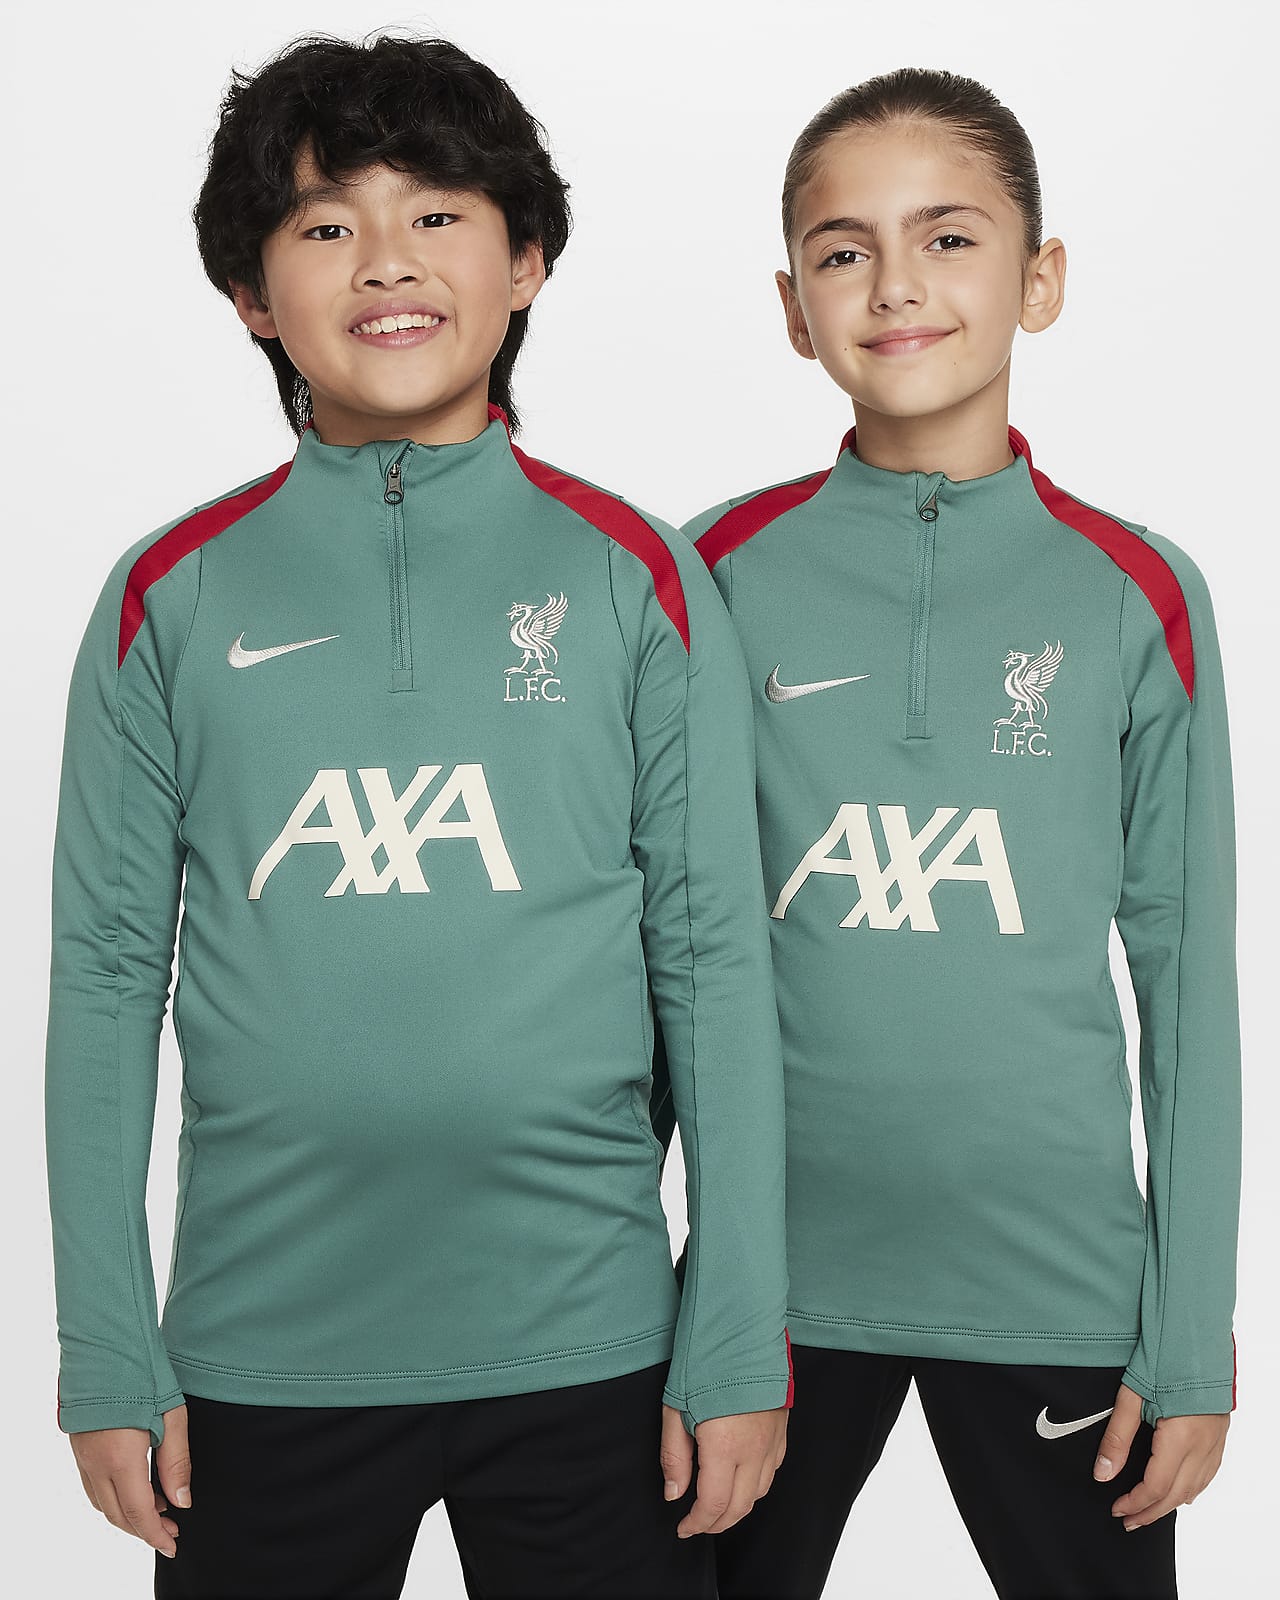 Liverpool F.C. Strike Older Kids' Nike Dri-FIT Football Drill Top